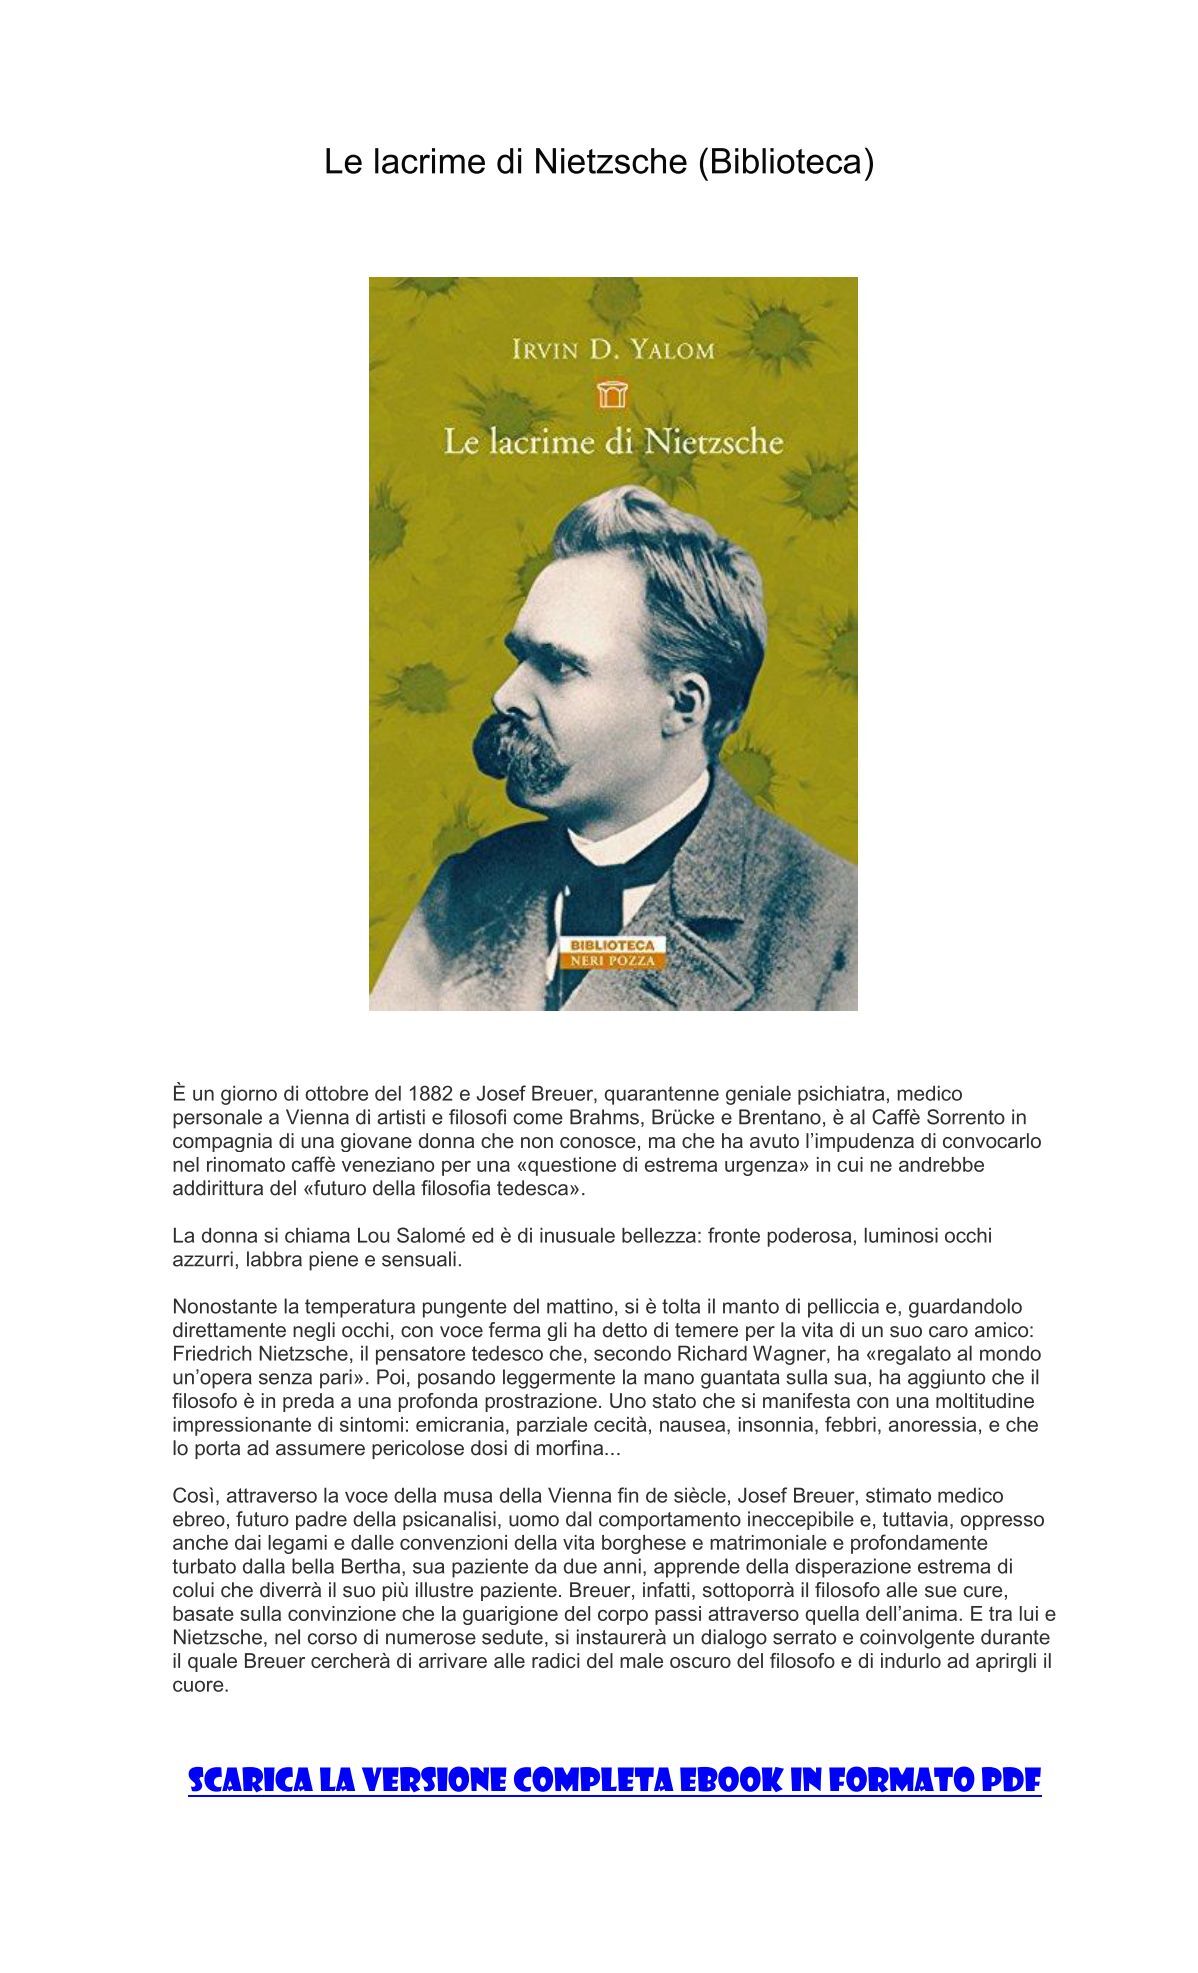 [ SCARICA ] Le lacrime di Nietzsche (Biblioteca) PDF